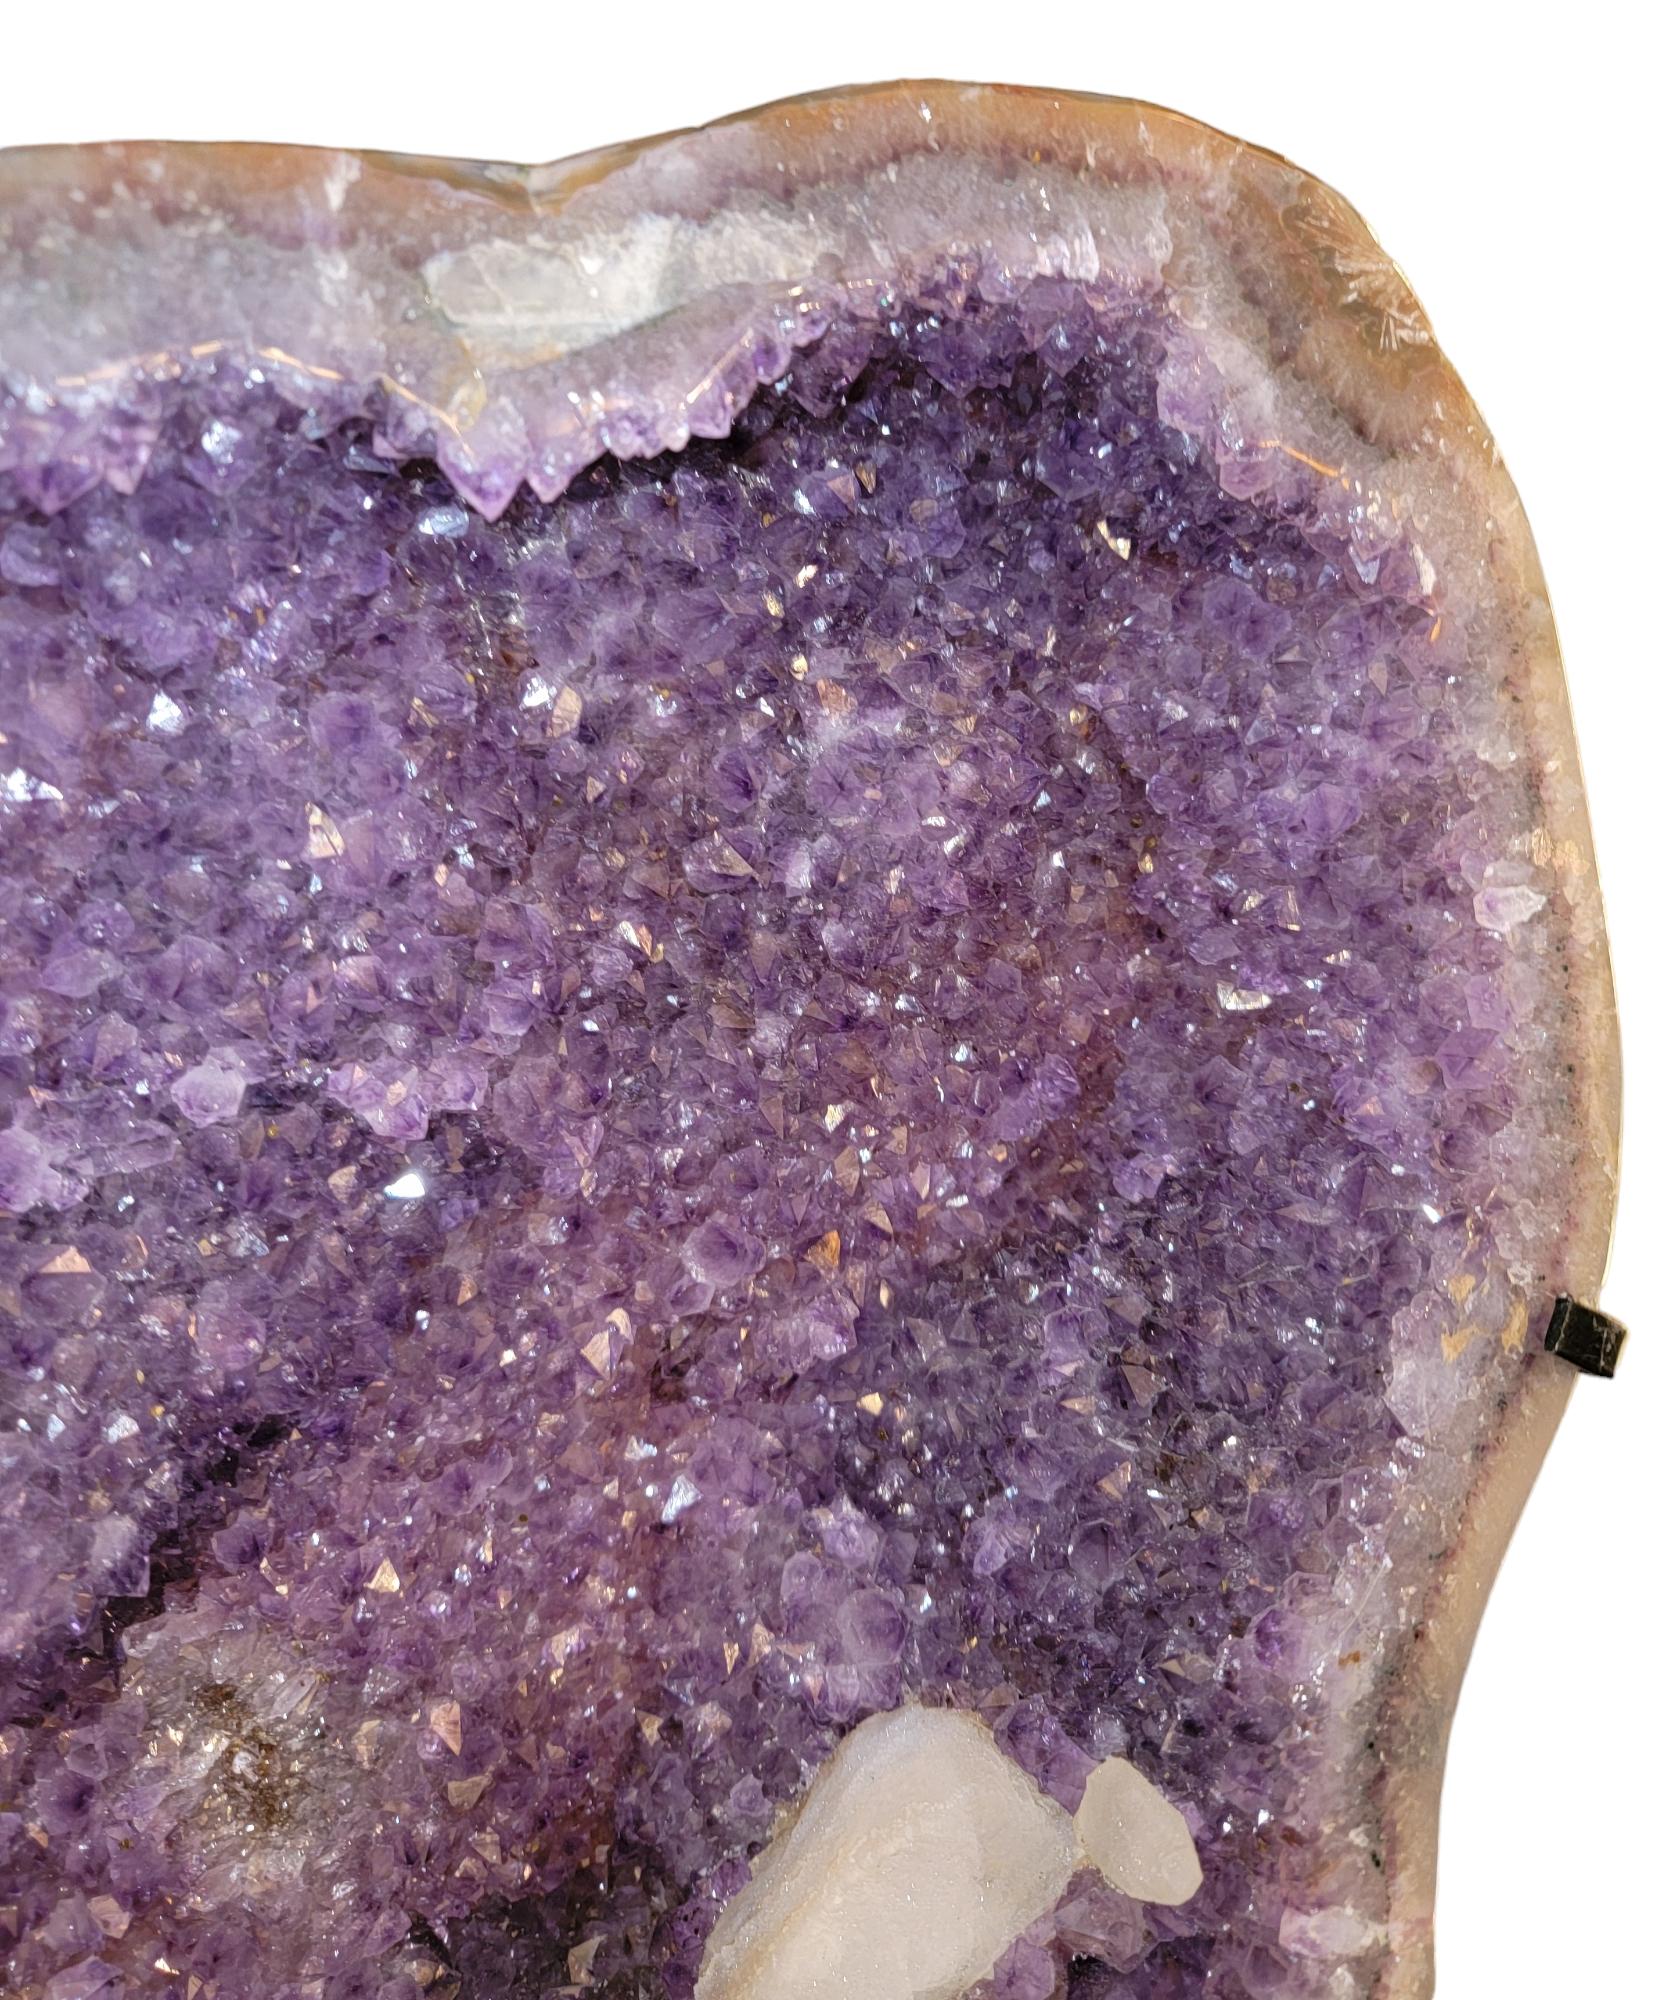 Rotierende Achatgeode mit Amethystkristallen. Der Sockel dieses natürlichen Exemplars ist so beschaffen, dass sich die Geode um 360 Grad drehen kann. Er kann in jede beliebige Richtung gedreht werden, während der Sockel an seinem Platz bleibt. Die